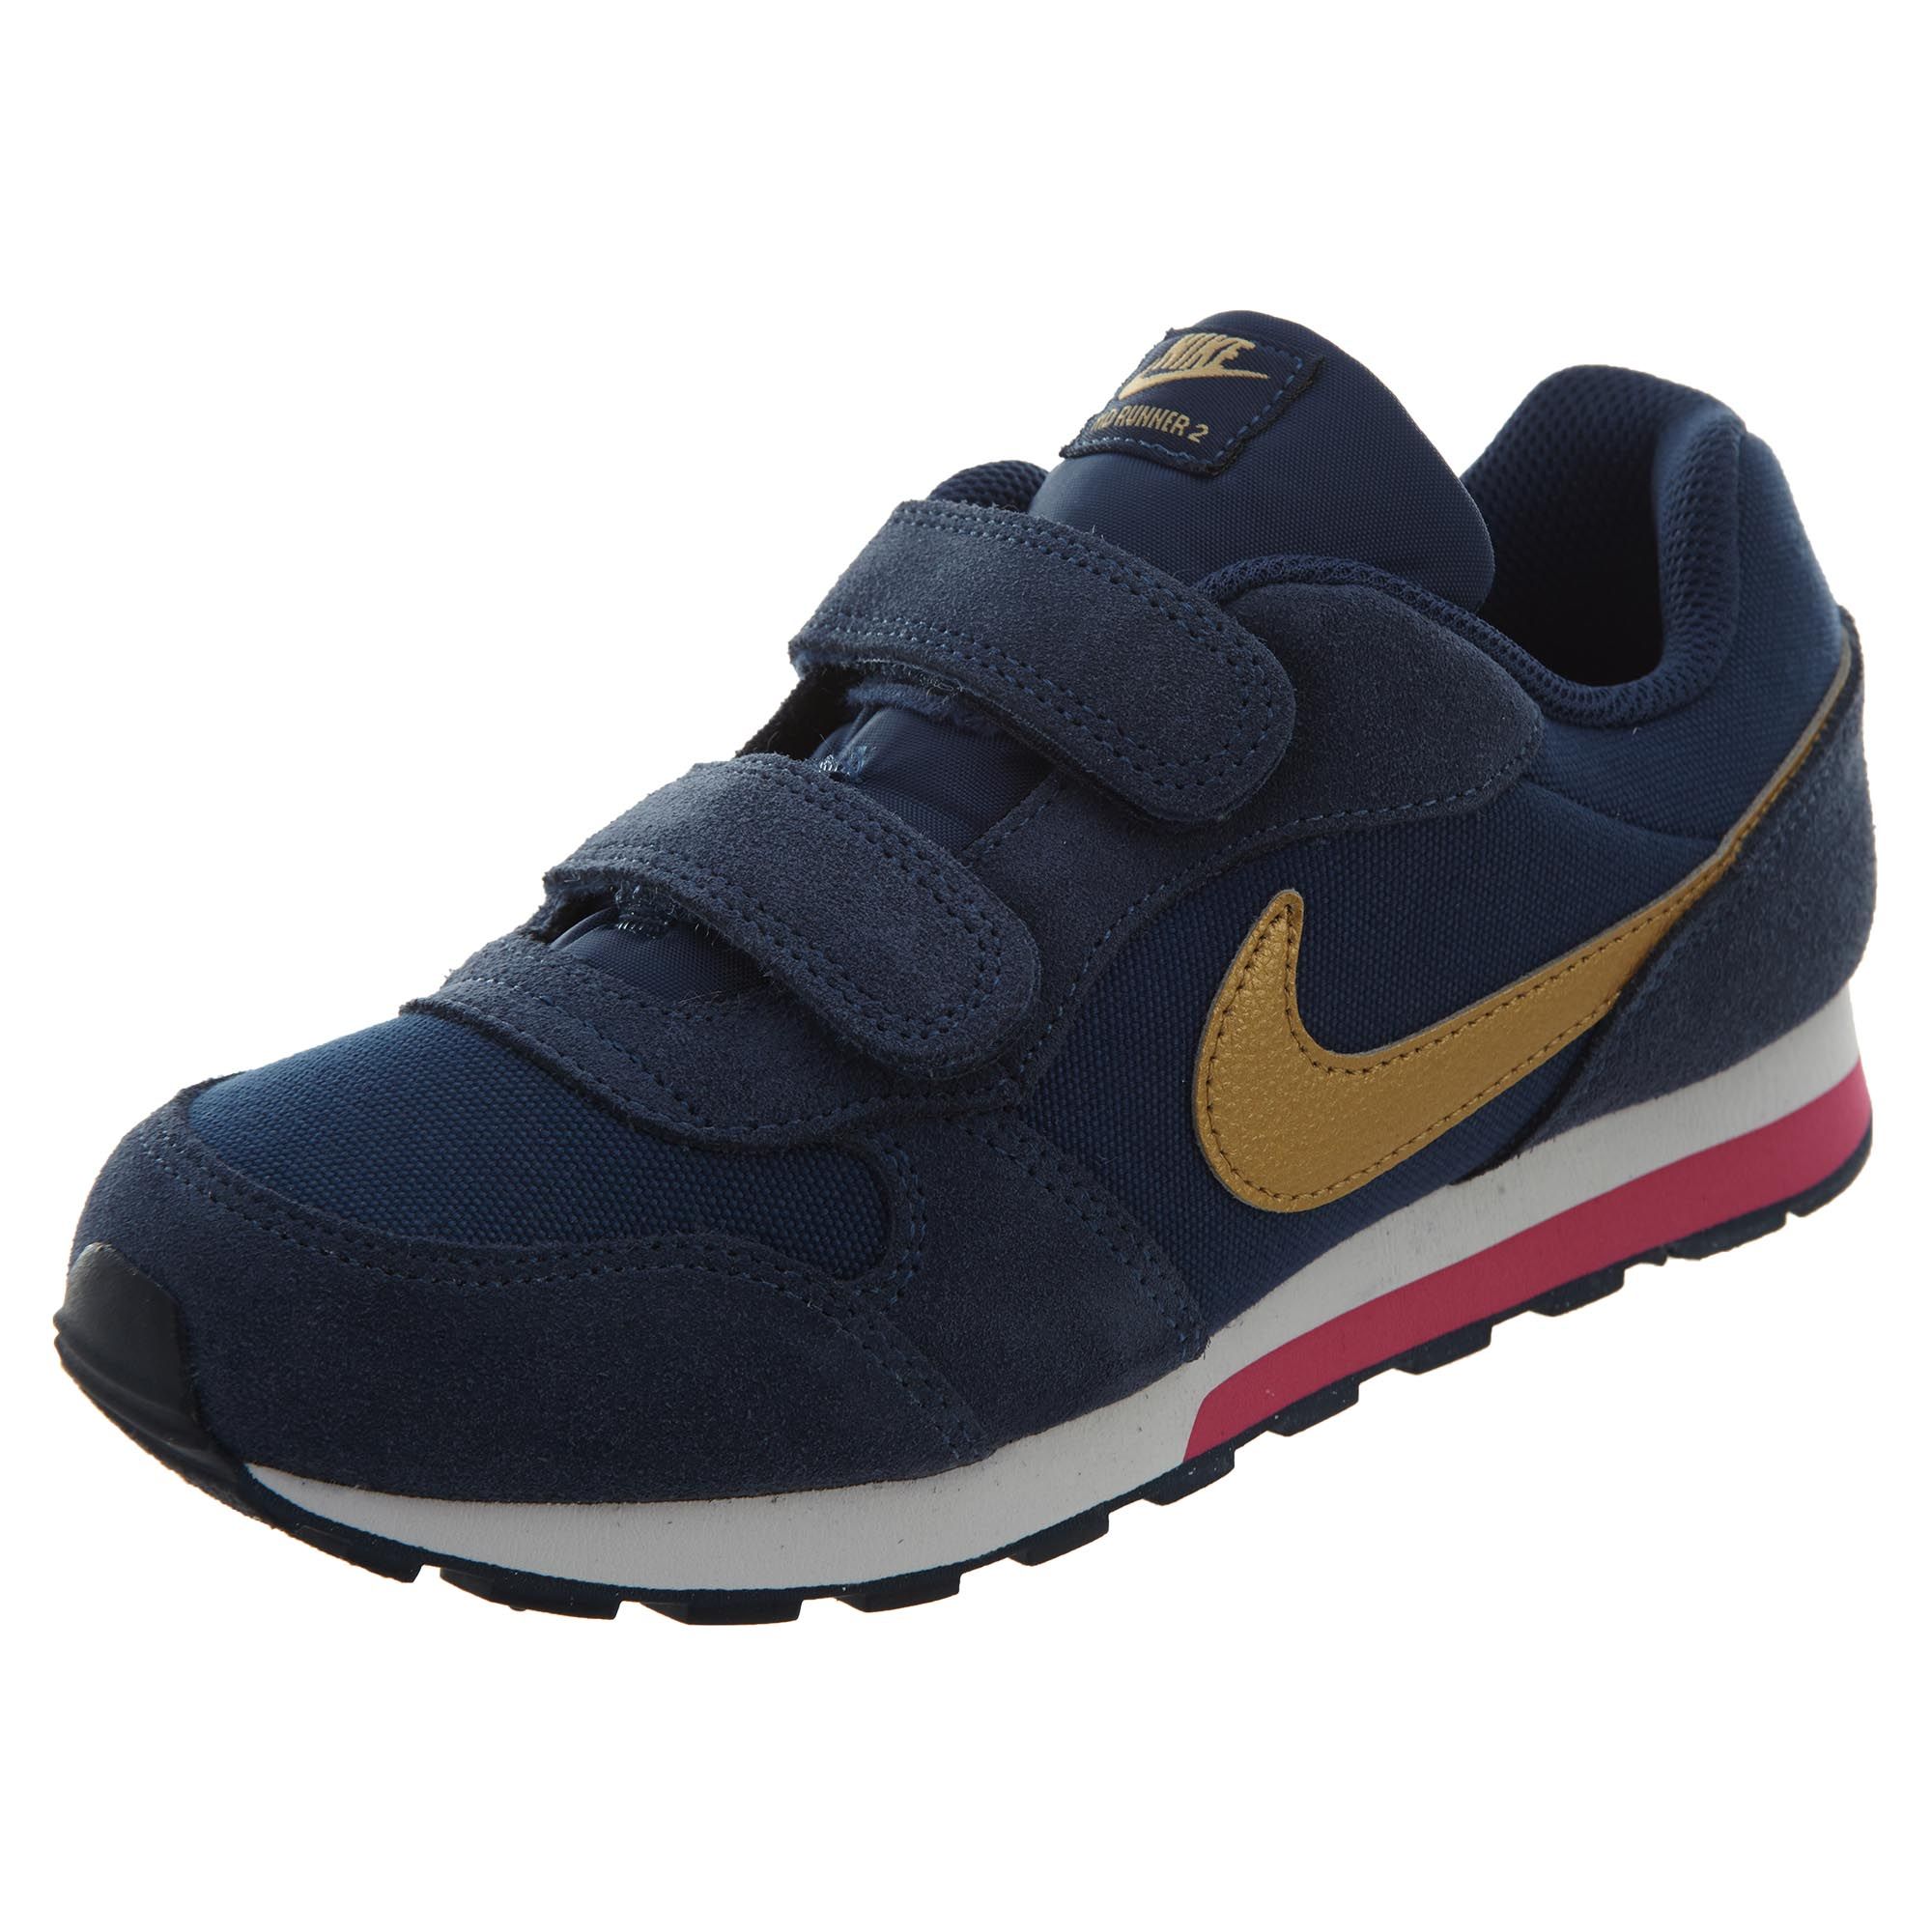 Nike Md Runner 2 (Psv) shoes Boys / Girls Style :807320